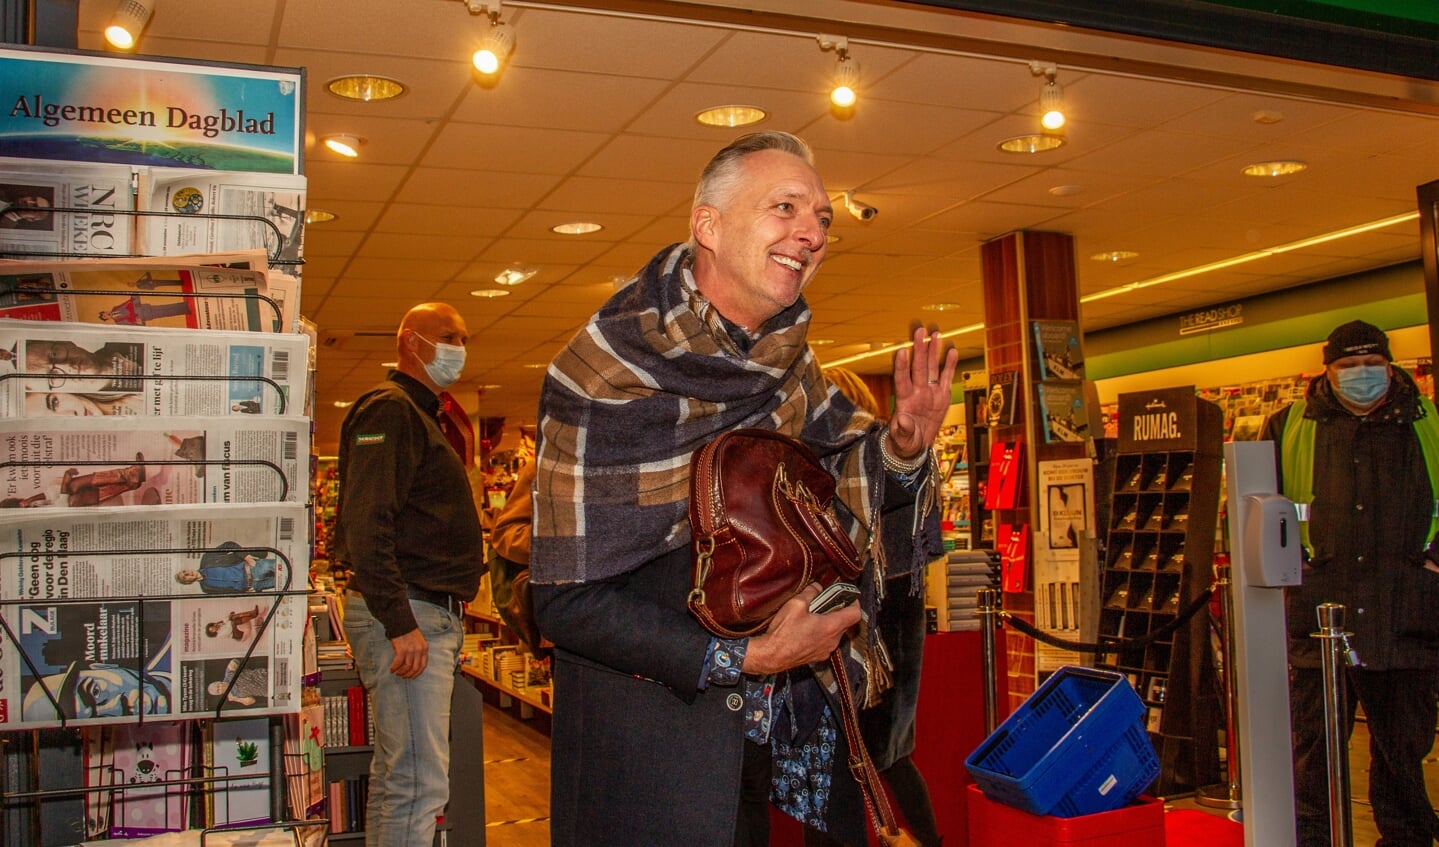 Martien zwaait naar zijn fans als hij met Erica de winkel in loopt. Foto: Liesbeth Spaansen